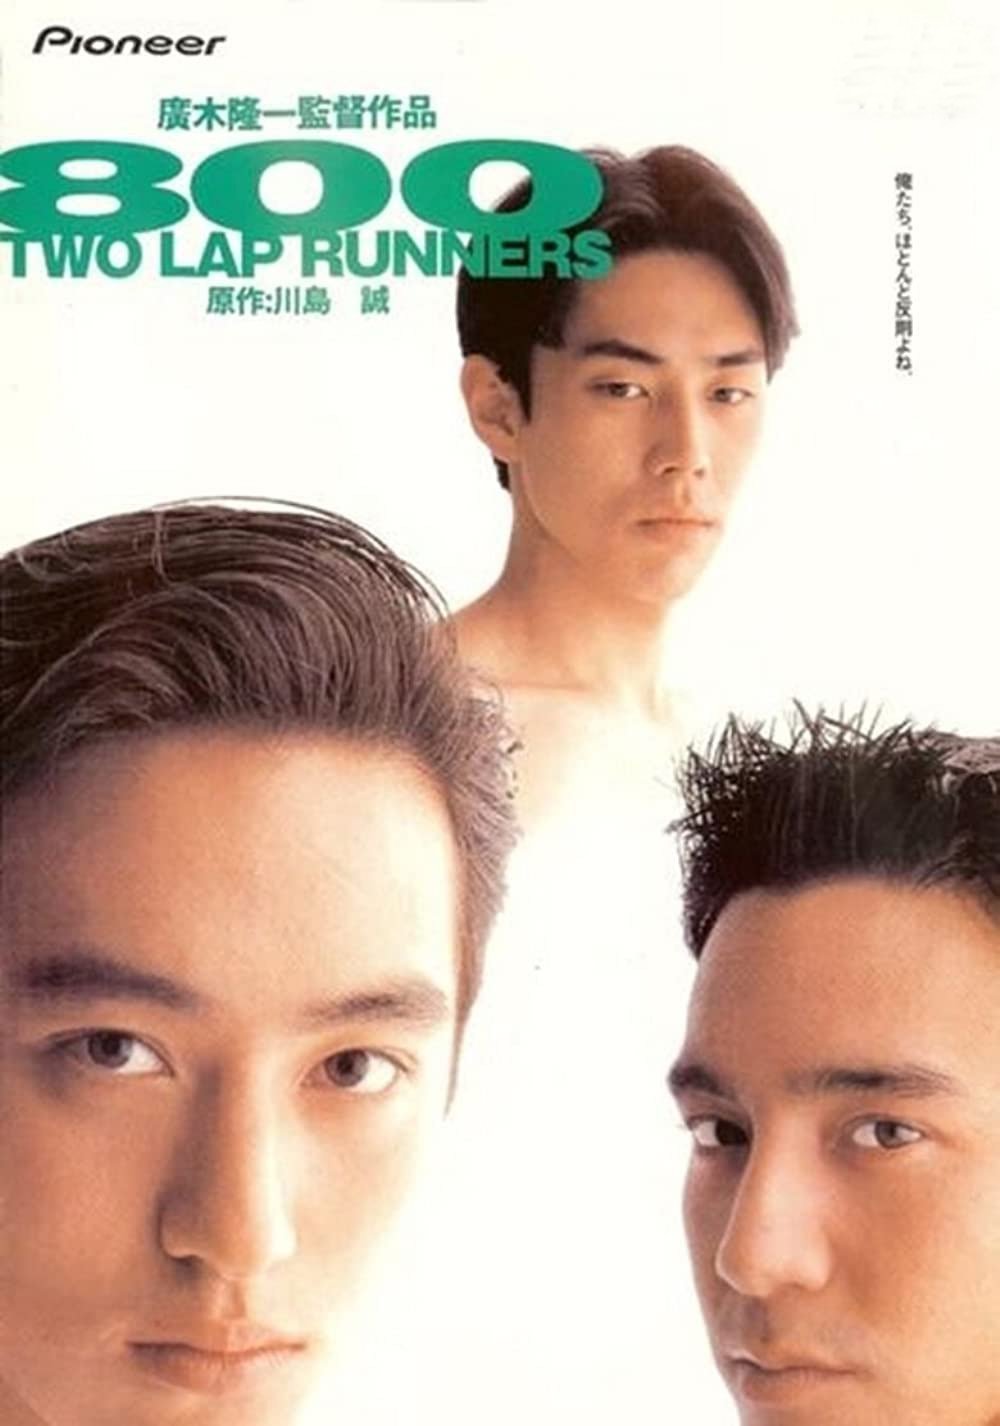 hiroki-800-two-lap-runner